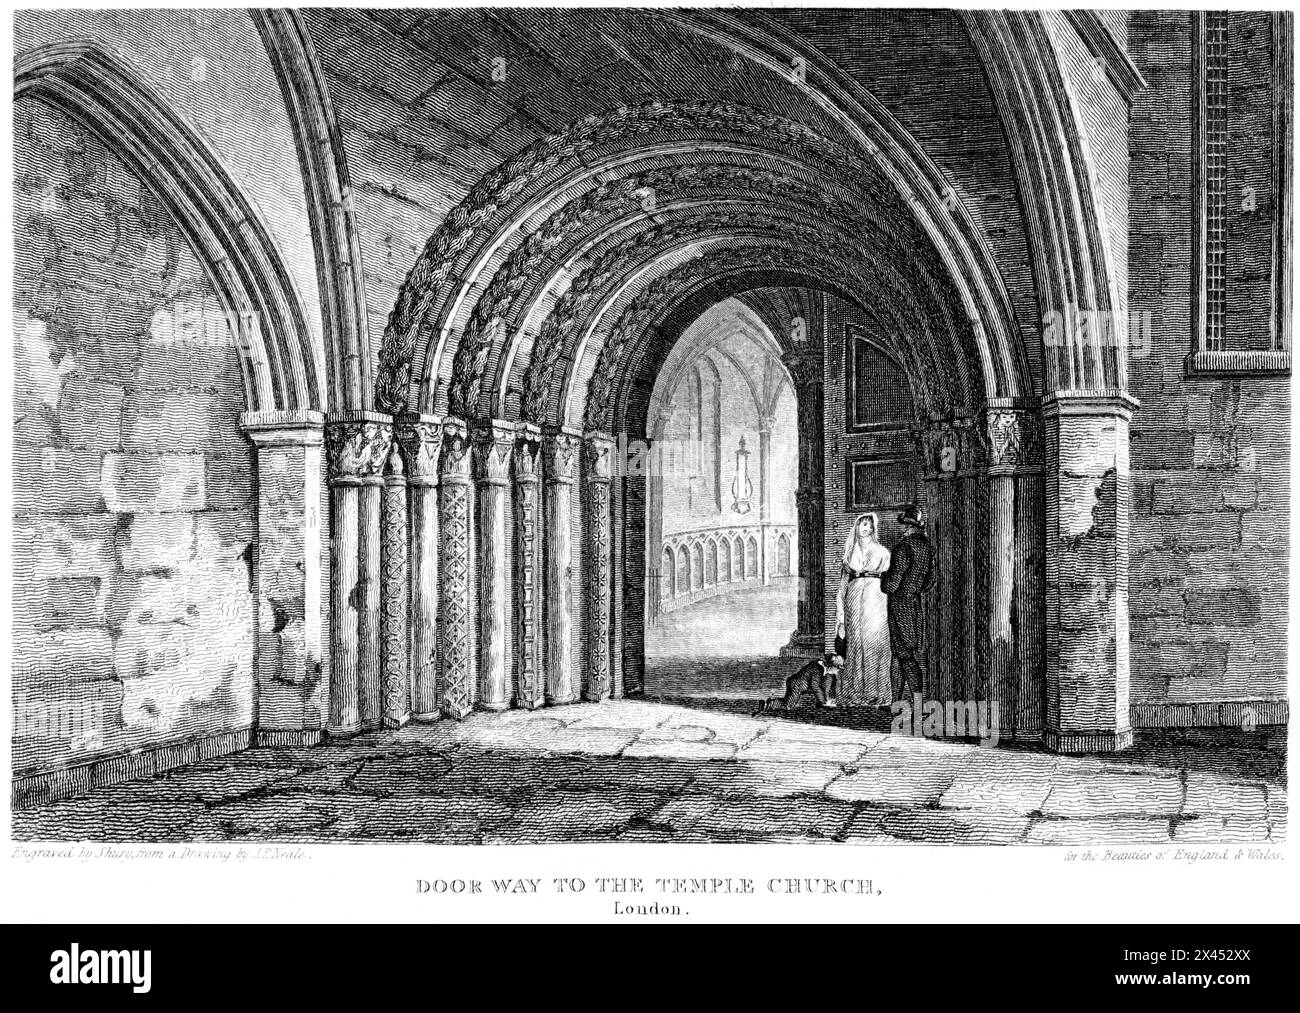 Gravur mit dem Titel The Doorway to the Temple Church, London UK scannt in hoher Auflösung aus einem Buch, das um 1815 veröffentlicht wurde. Urheberrechtlich geschützt. Stockfoto